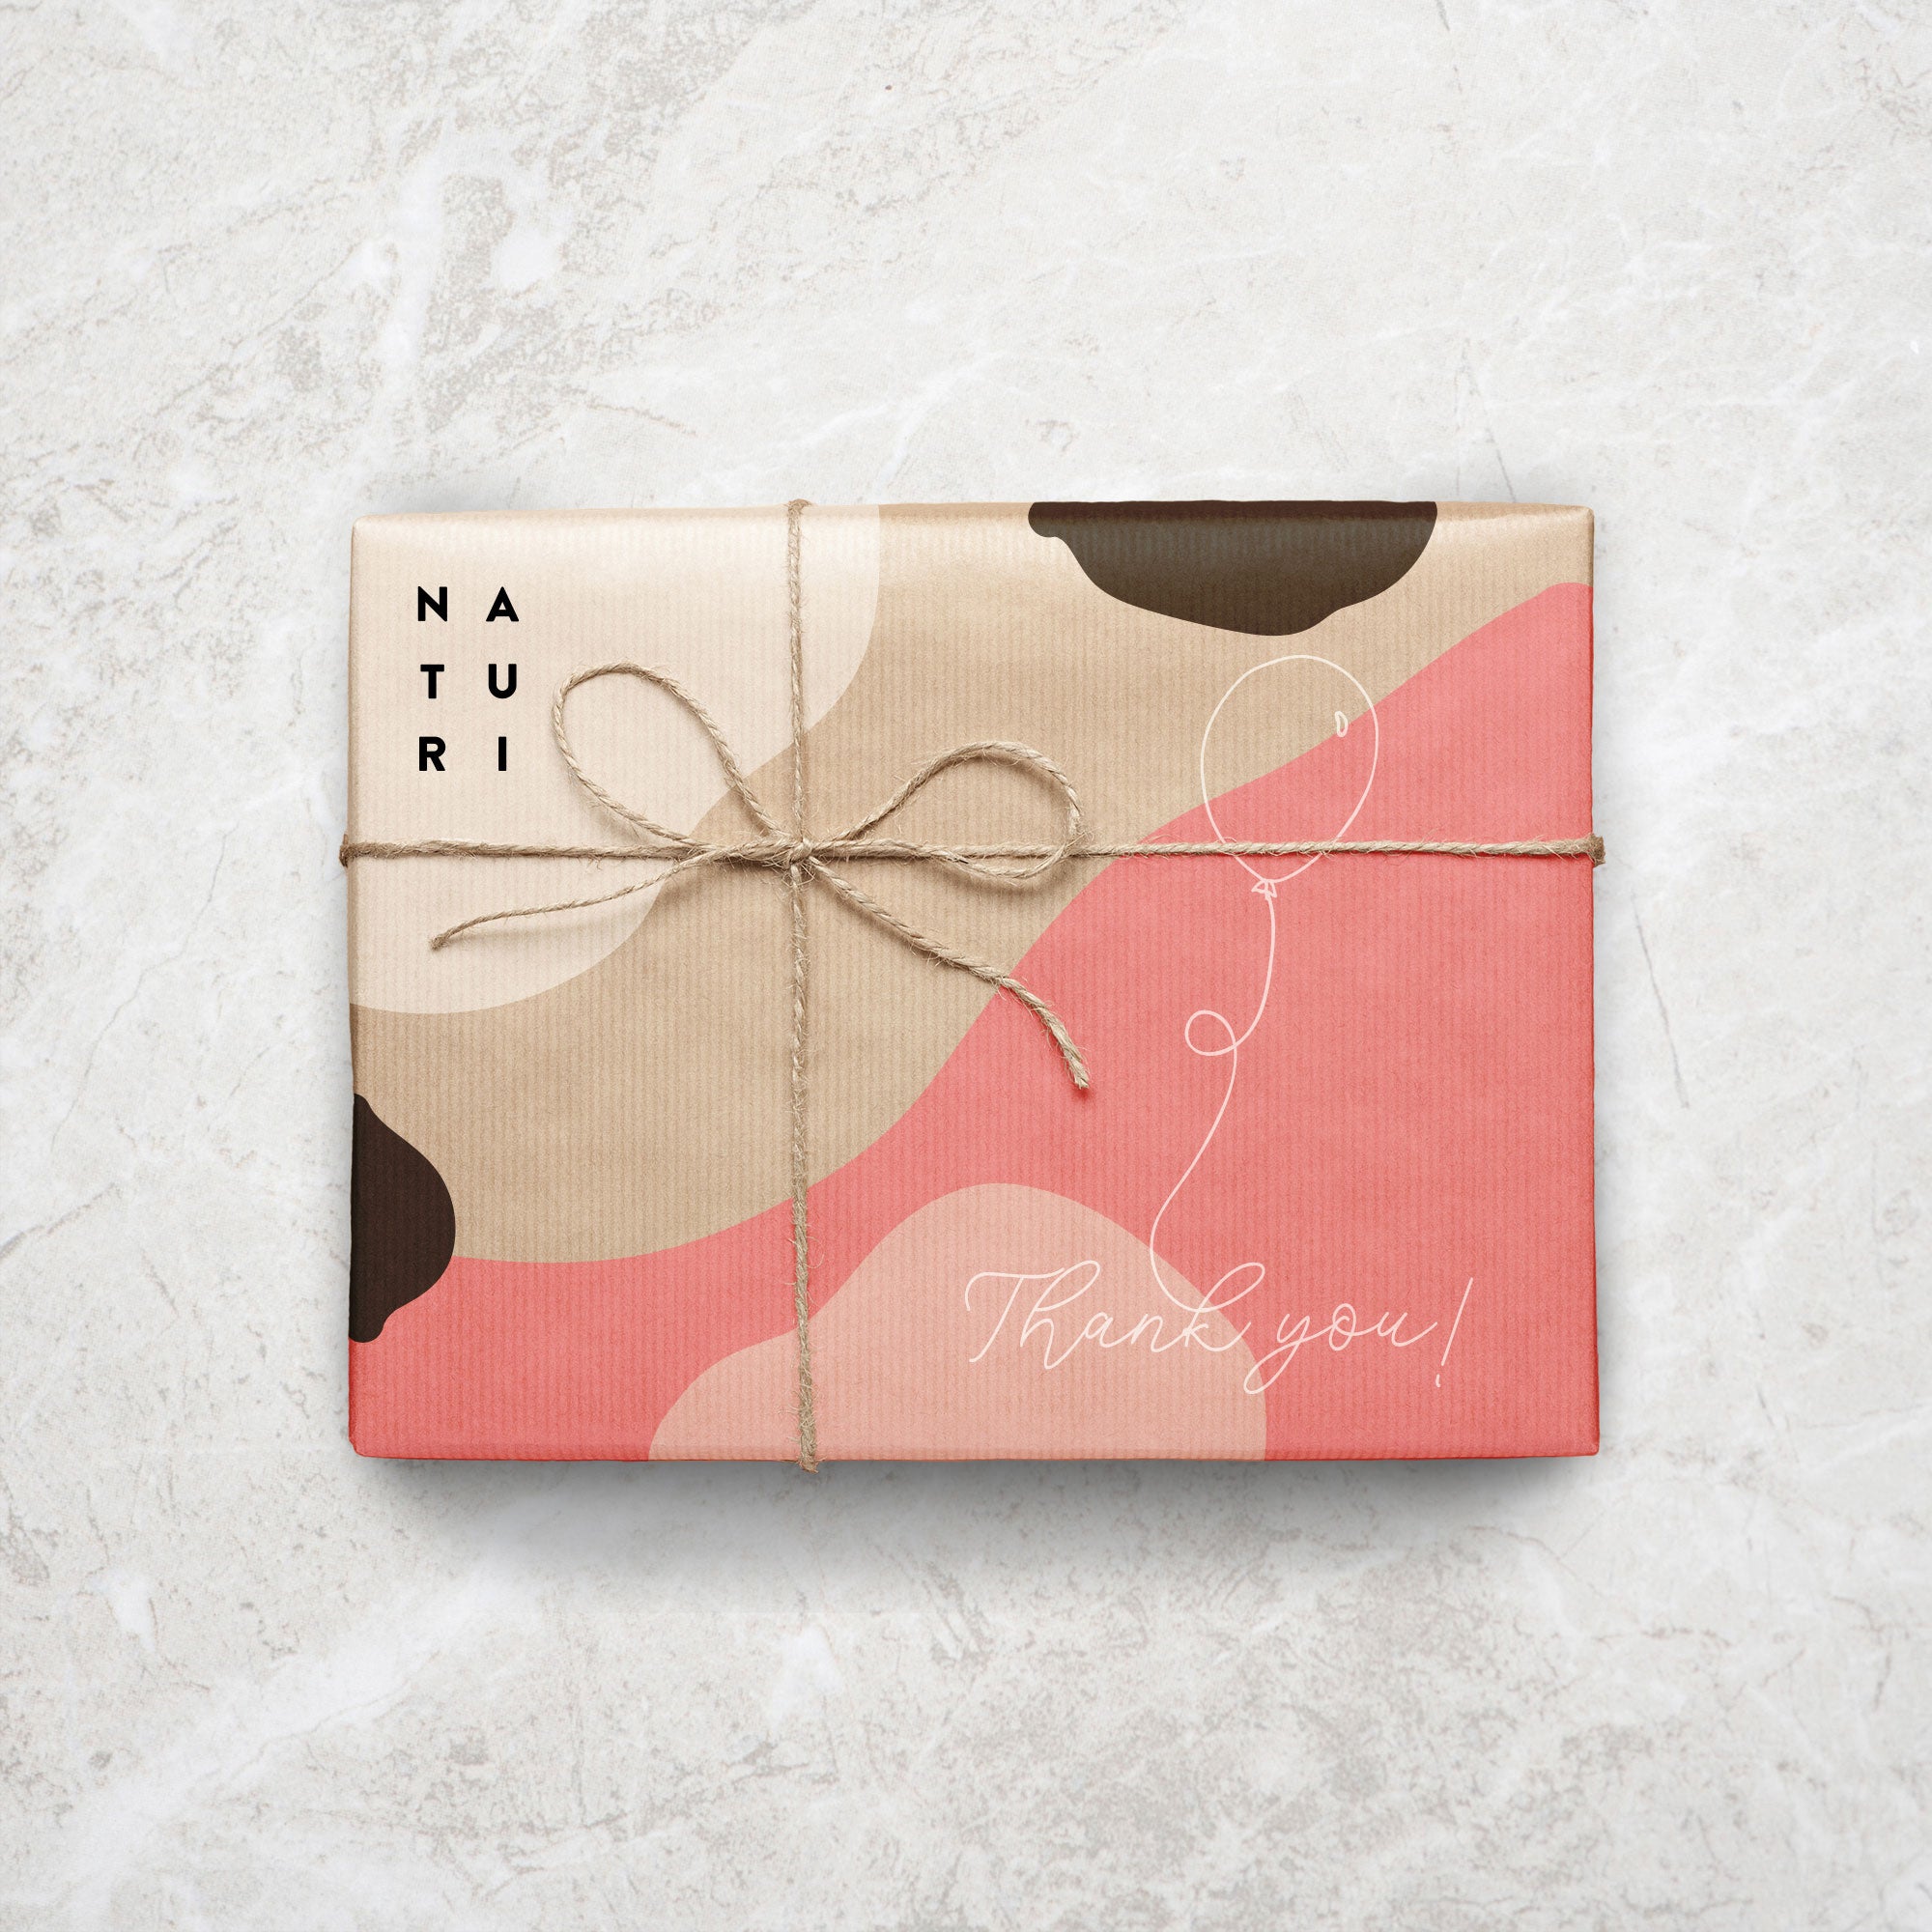 Karolina Król Studio custom illustrated shipping box packaging design